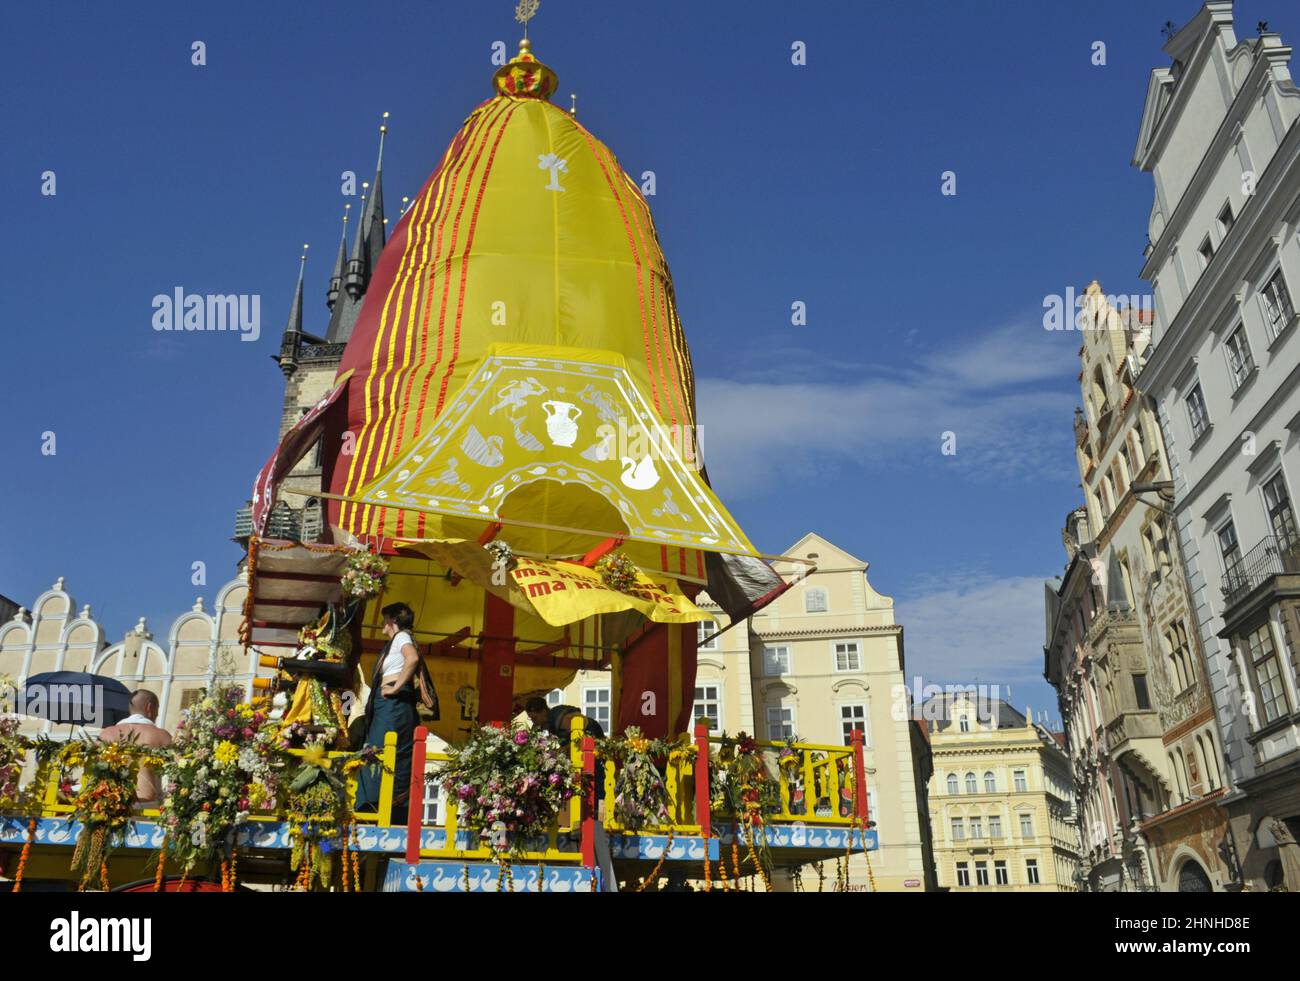 An Hare Krishna Ratha (ein farbenfroher beweglicher Tempelwagen) am Staromestske namesti, dem Altstädter Ring Prag, Tschechische Republik Stockfoto